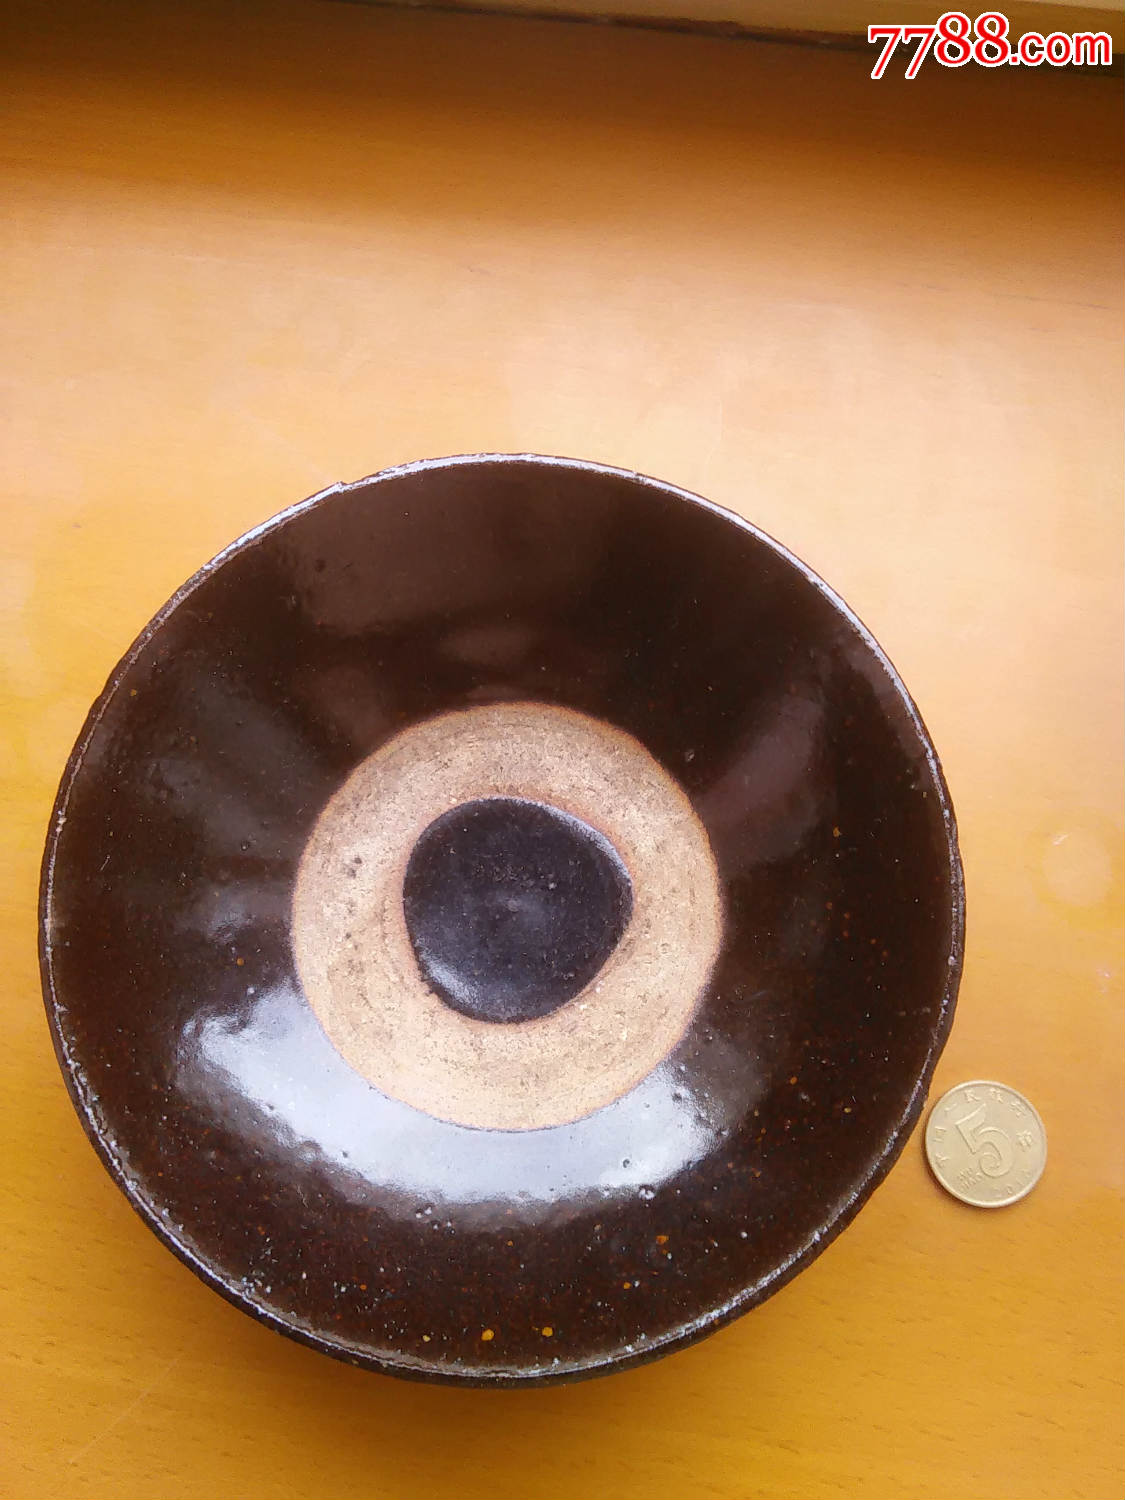 清代酱釉瓷碗图片图片